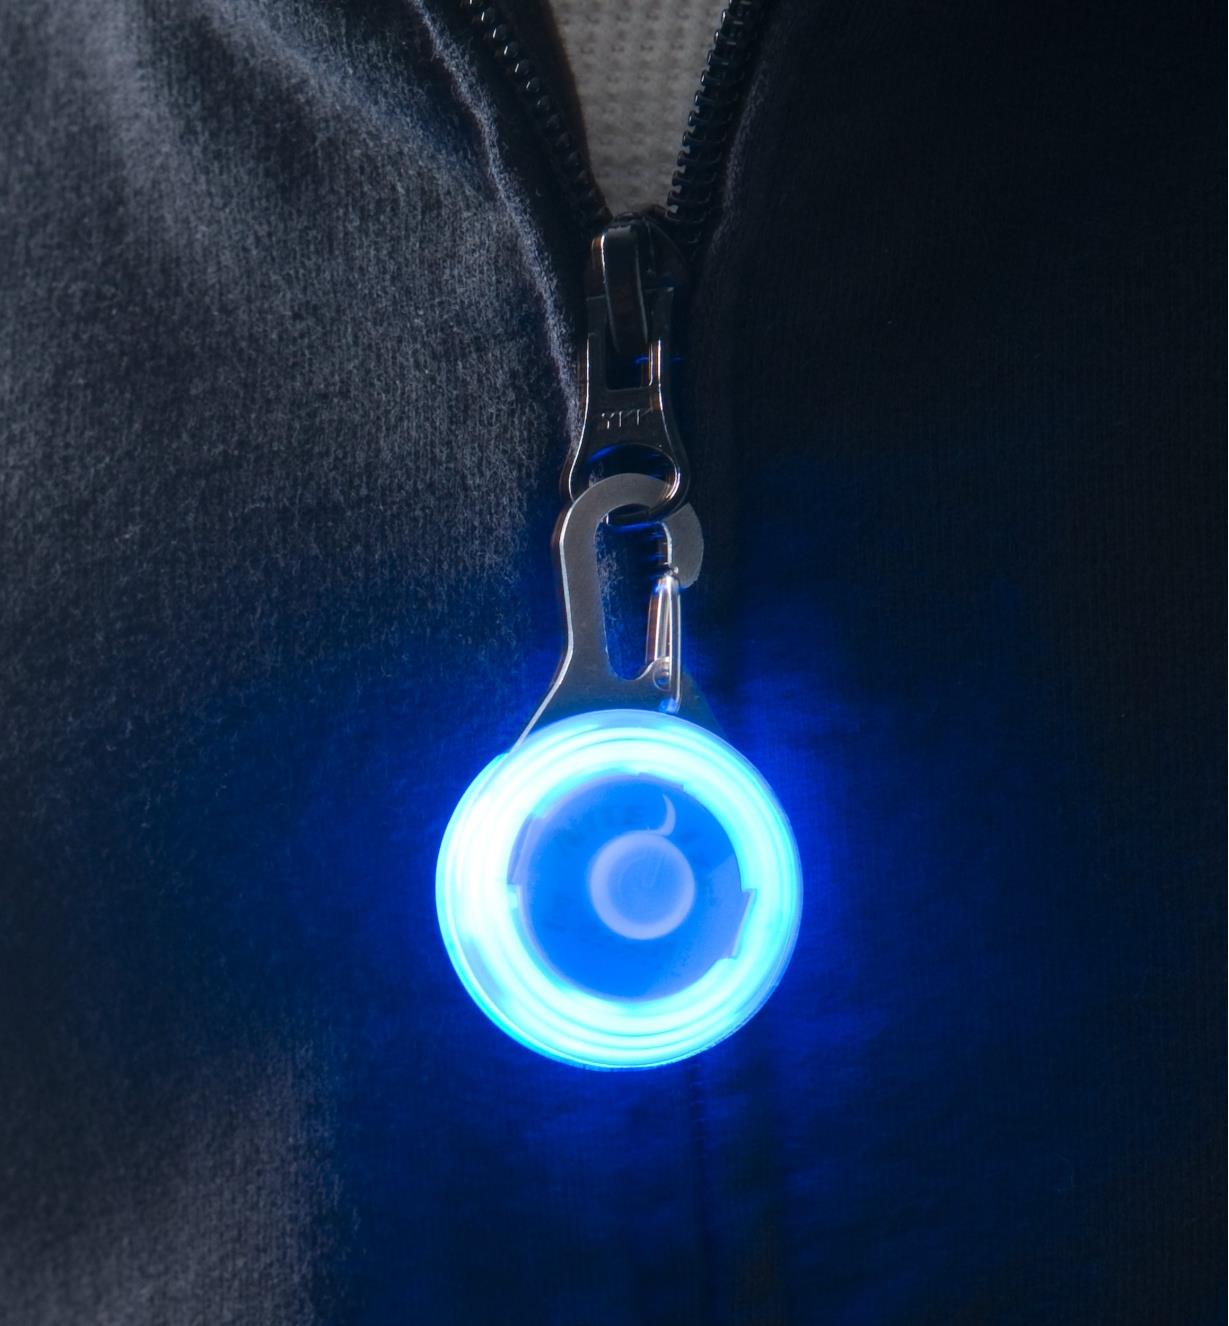 Blue Carabiner Light attached to a sweatshirt zipper